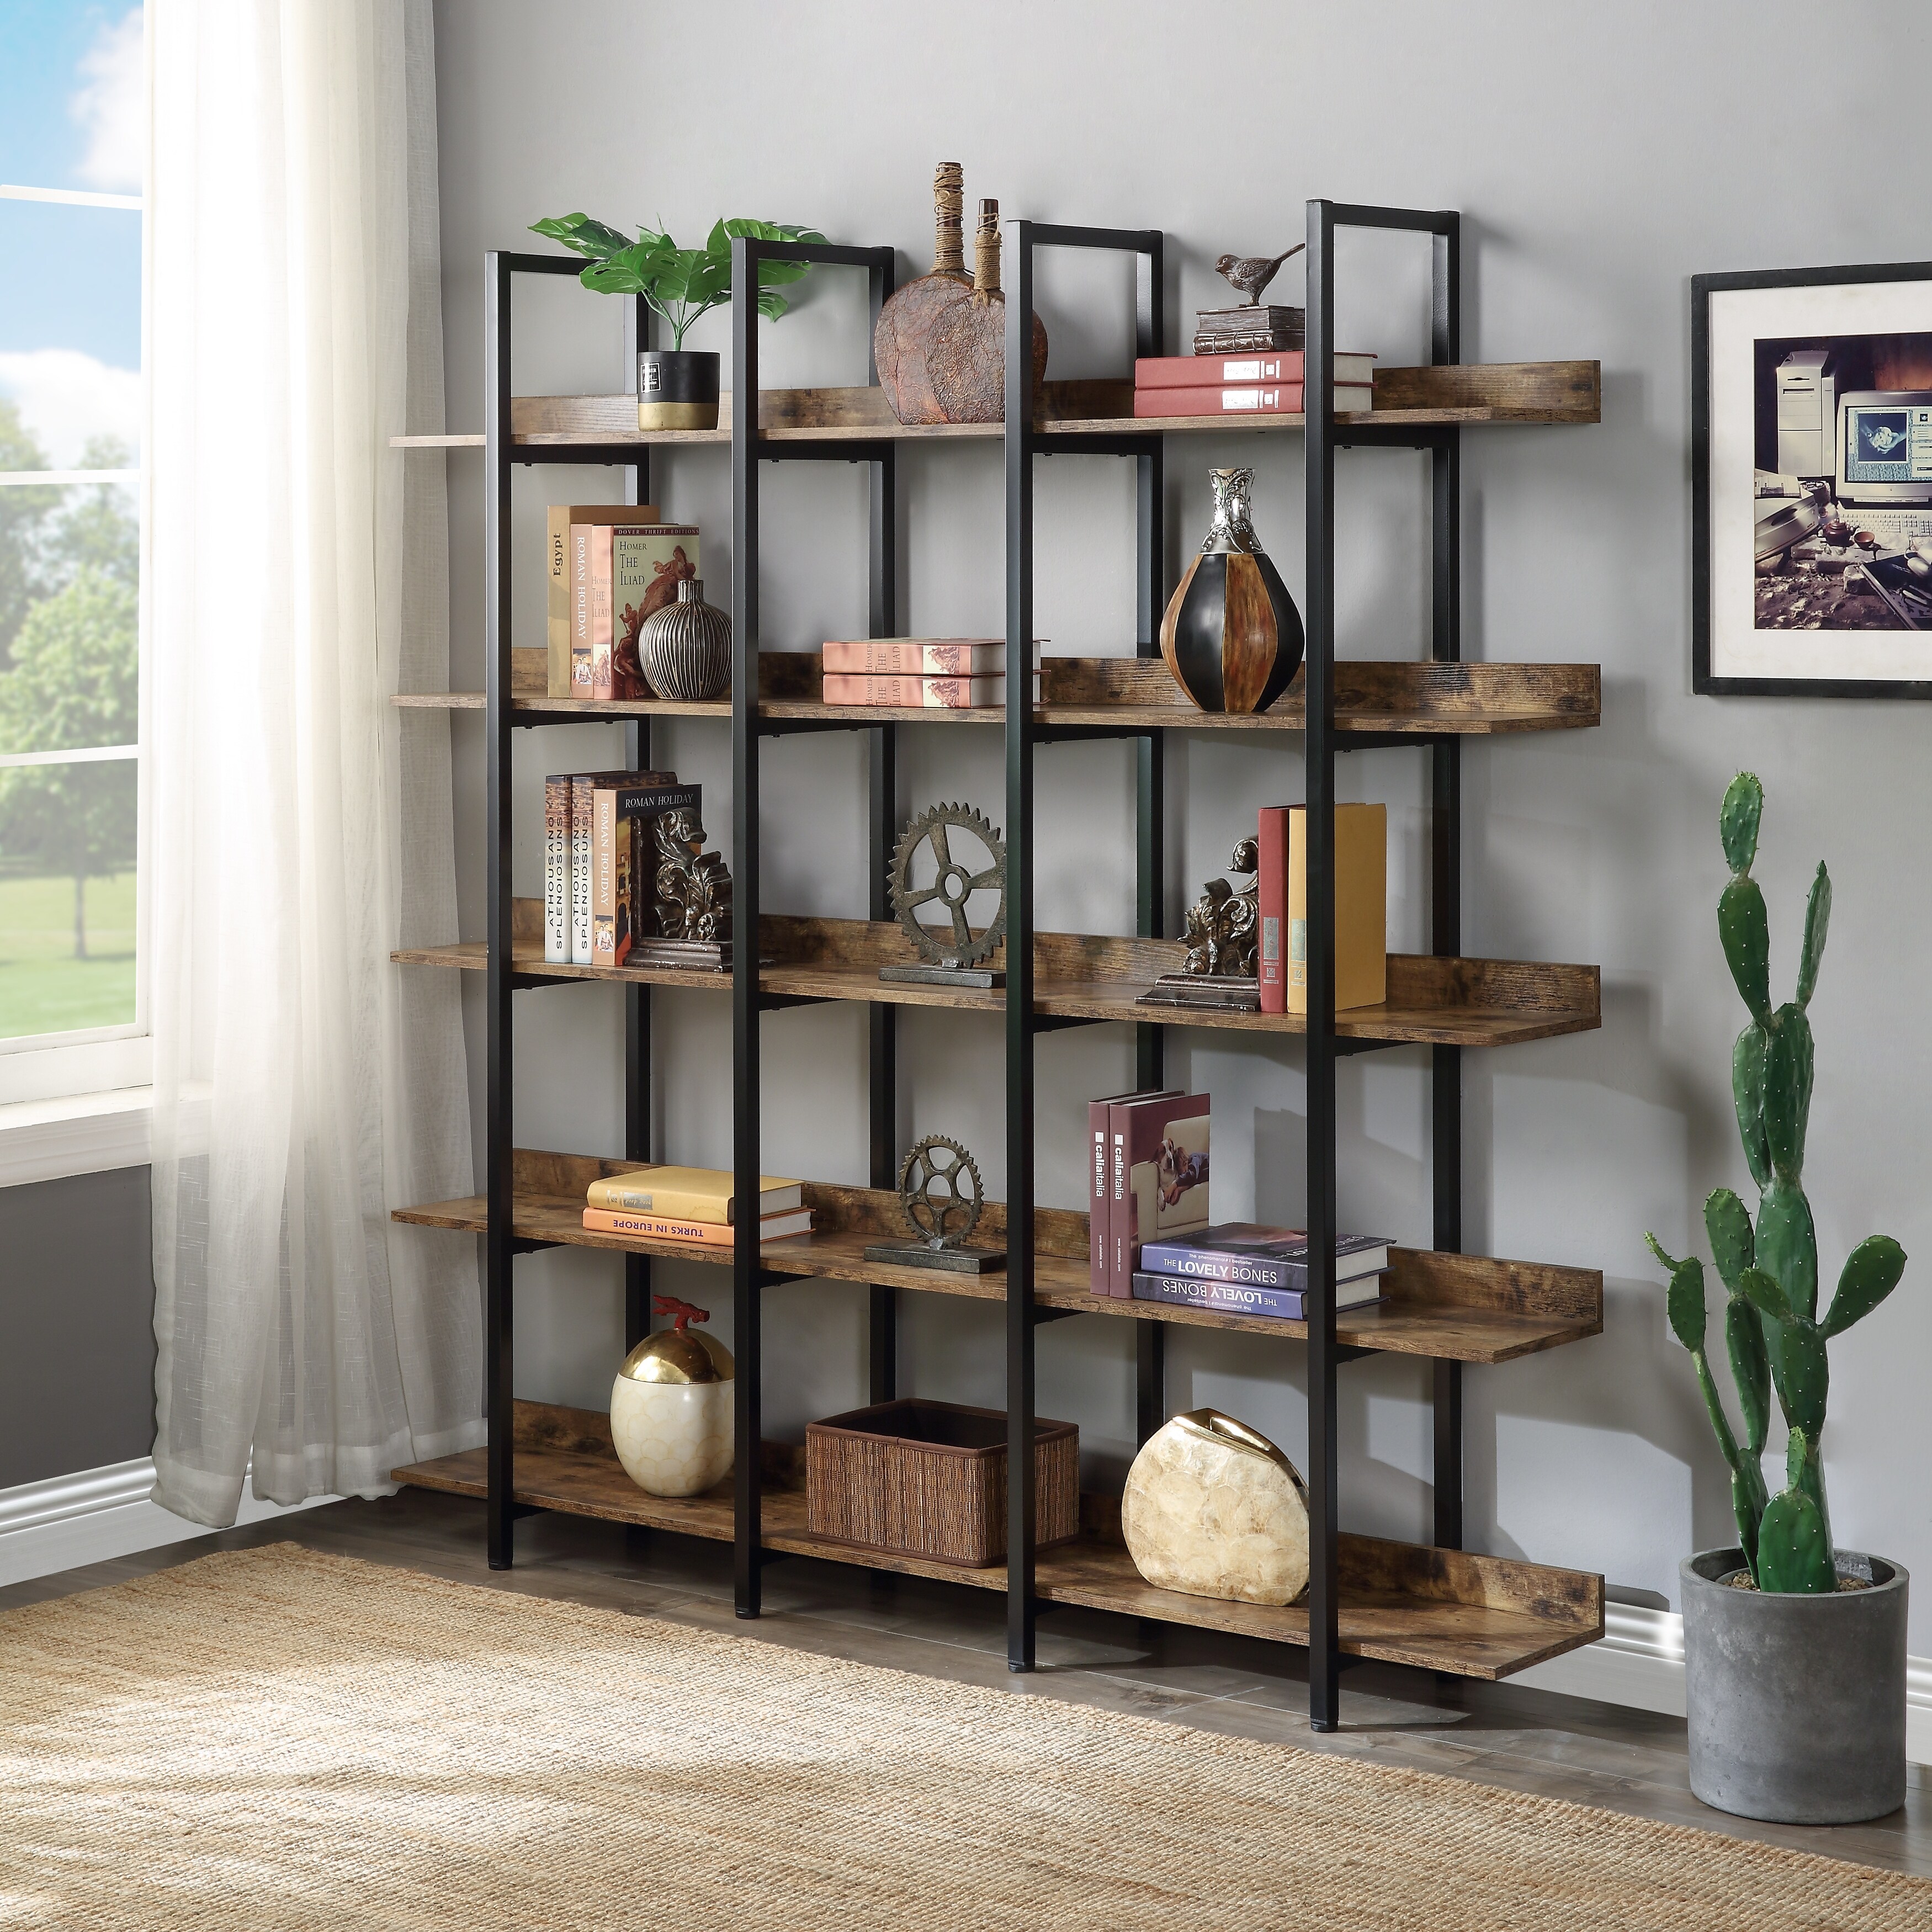 Dark Brown Wood Stackable Display Box Riser Stands, Decorative Storage Bins,  3-Piece Set